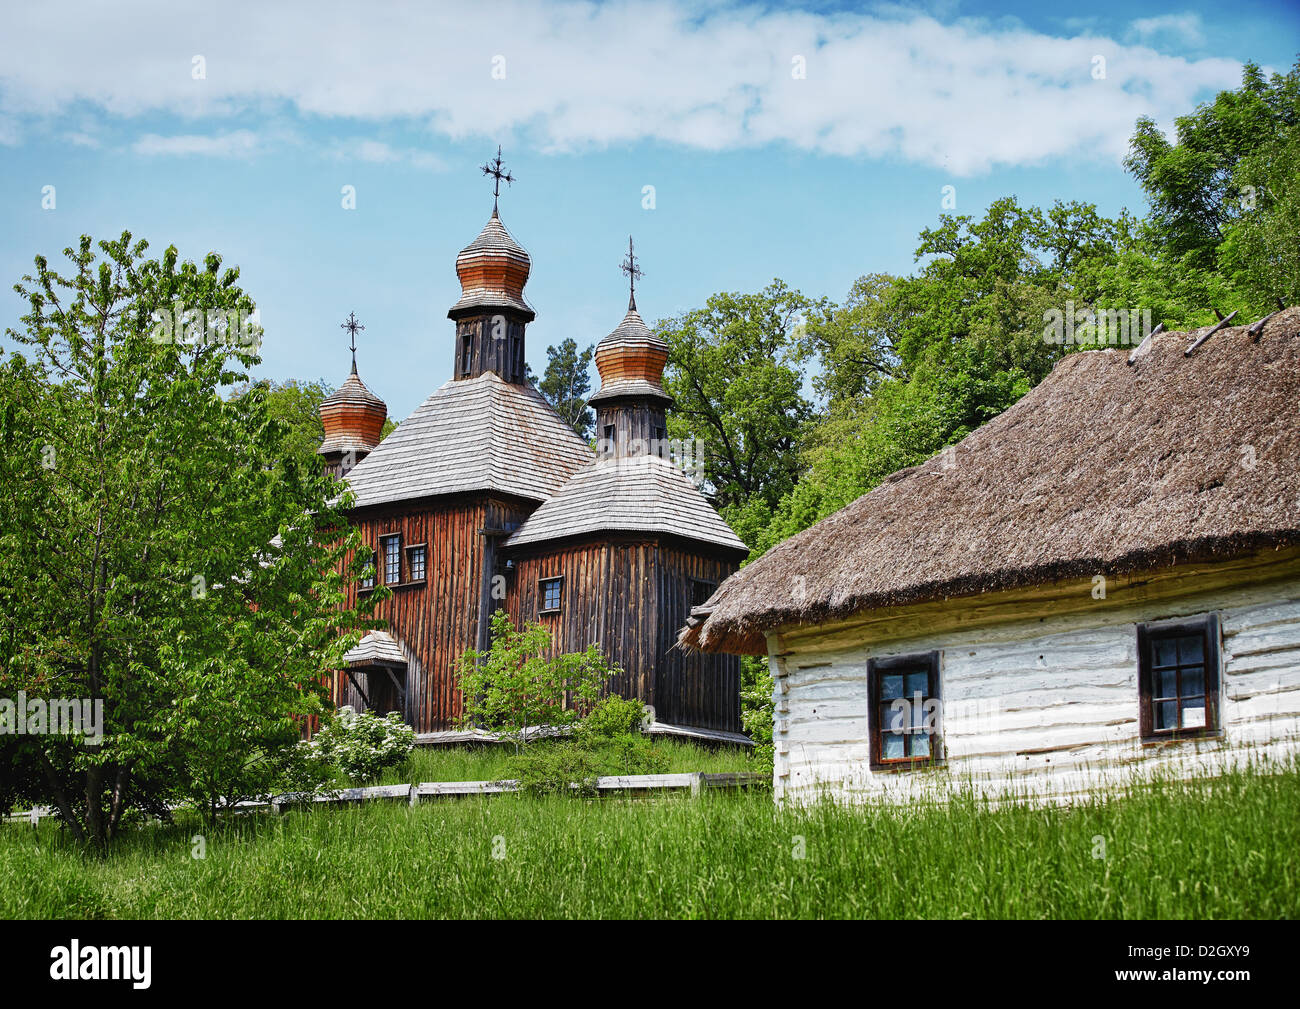 Tradizionale villaggio slavo di legno con la chiesa ortodossa e la casa con tetto di paglia Foto Stock